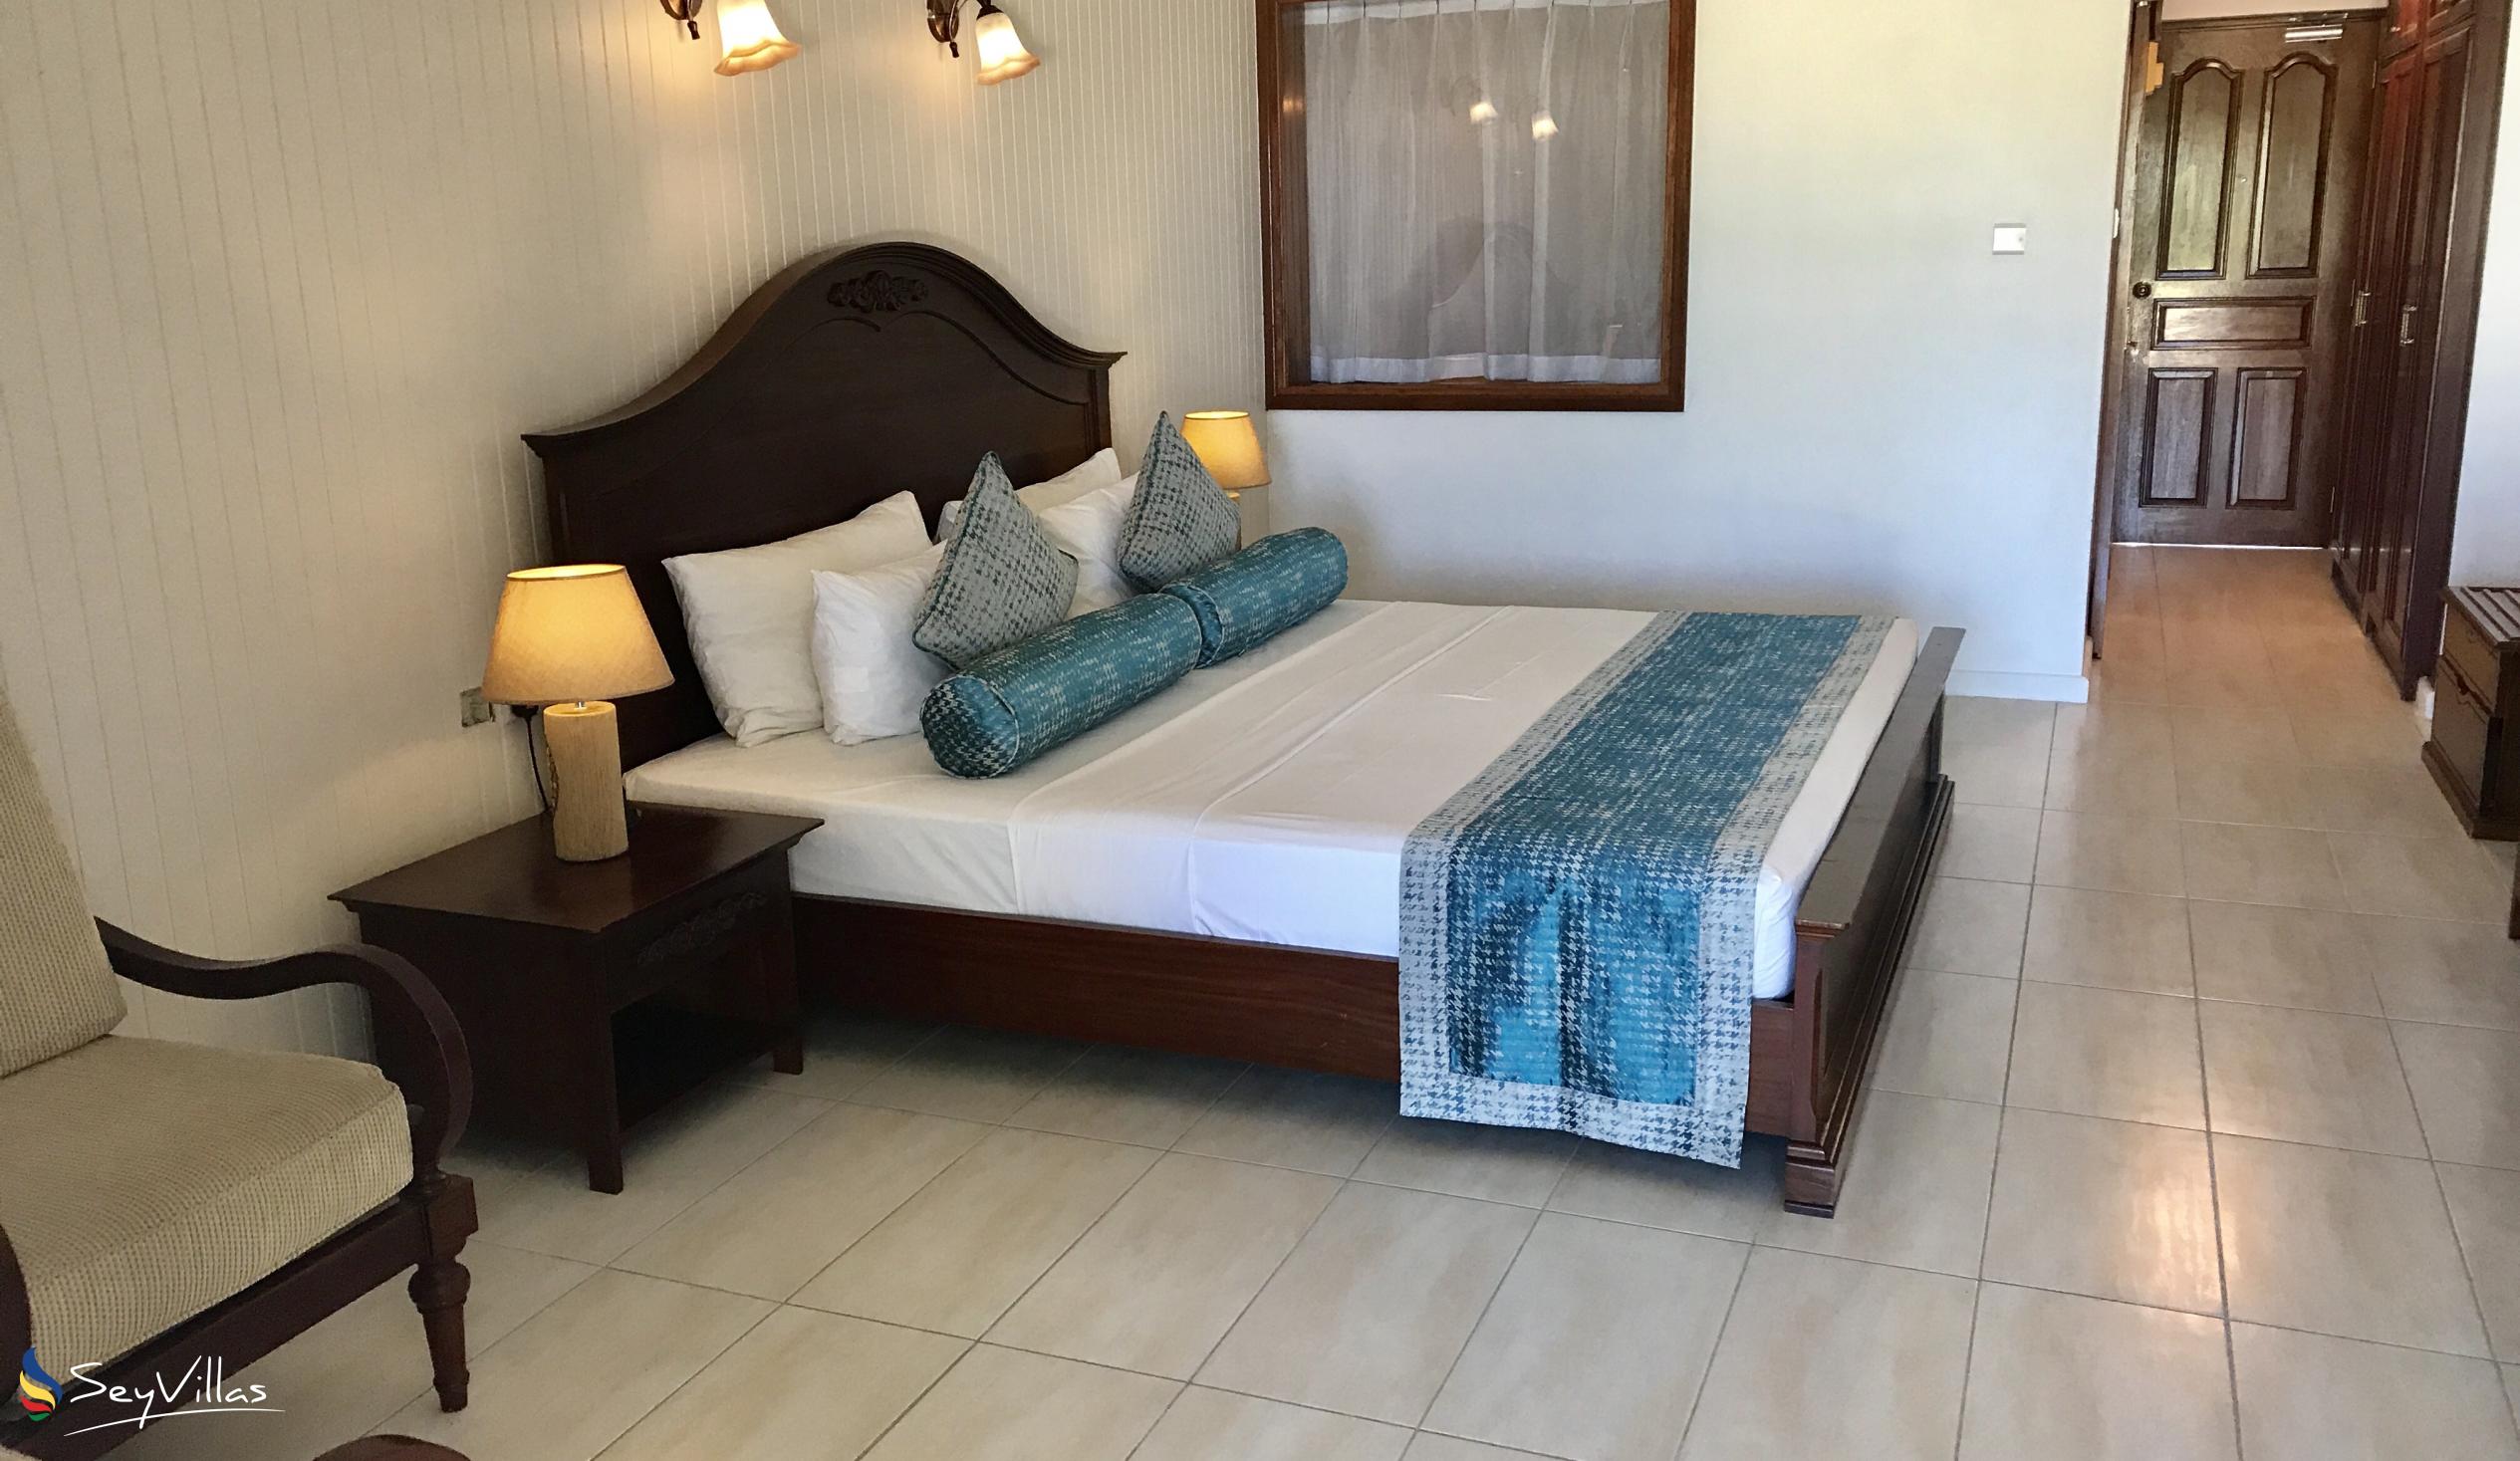 Photo 110: La Digue Island Lodge - 2-Bedroom Beach House Suite - La Digue (Seychelles)